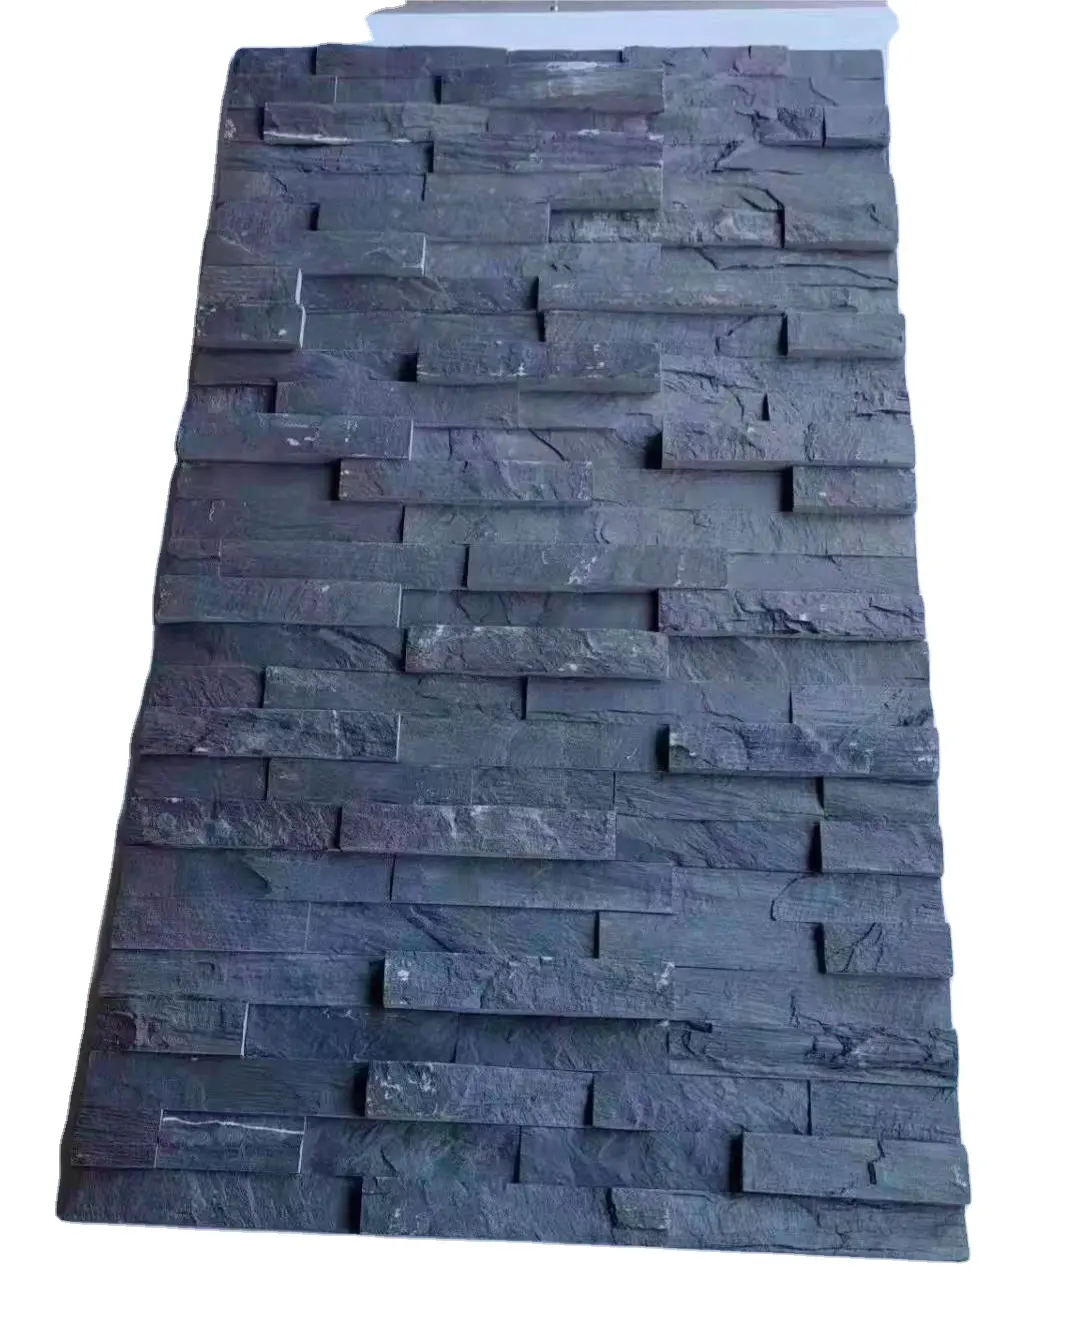 زينة حائط، بلاط من الحجر الطبيعي المُحسن باللون الأسود، بلاط مجاني عصري للأماكن الخارجية، بلاط خارجي للشقق على شكل فطر